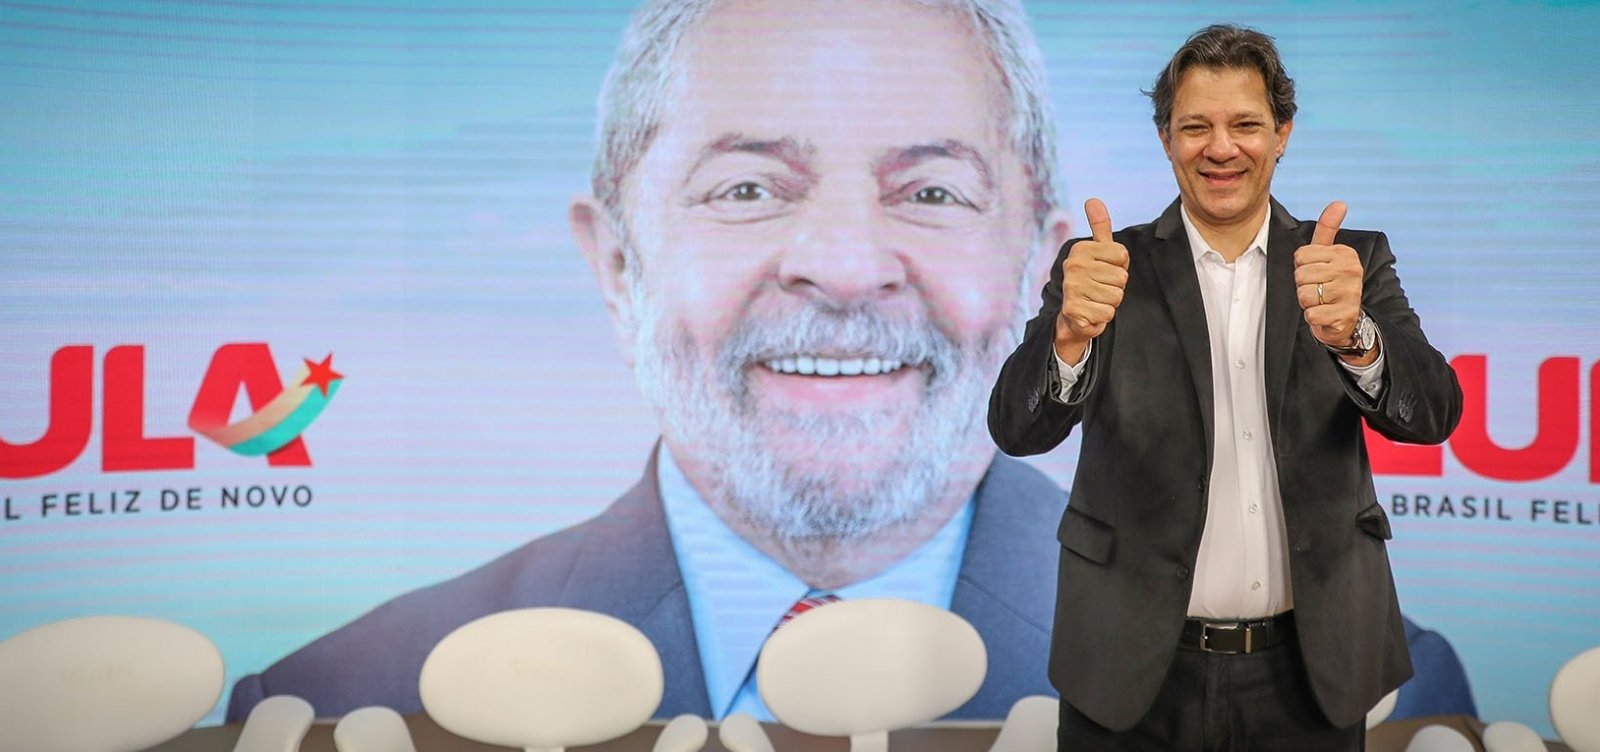 Advogados do PT avaliam que TSE pode julgar registro de Lula antes do início do horário eleitoral